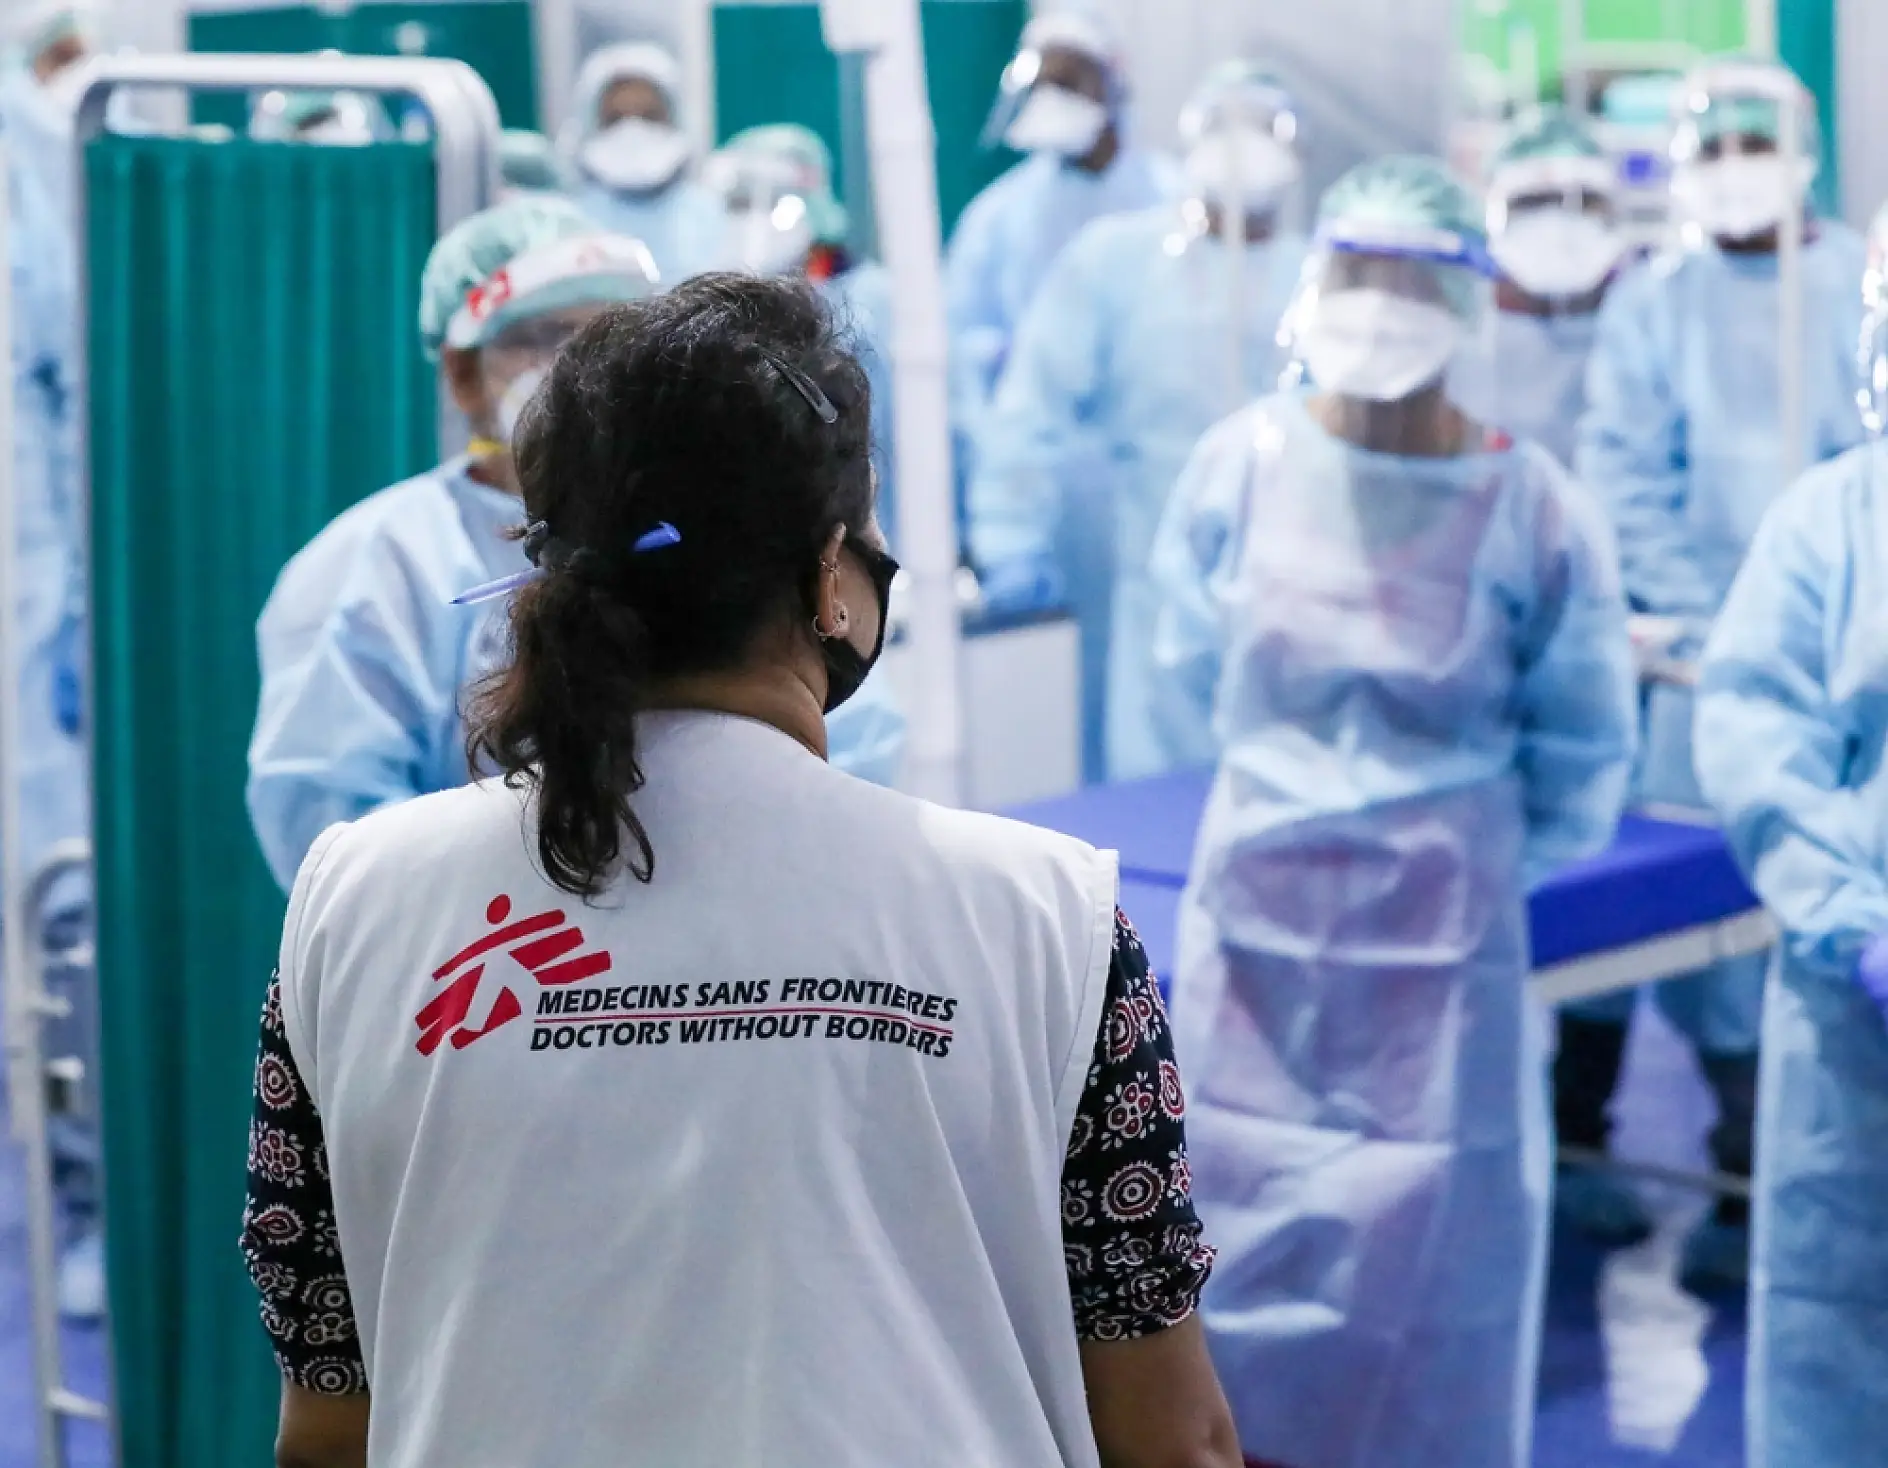 Одним з головних пріоритетів Doctors Without Borders є безпека медичних працівників, і саме тому весь персонал повинен дотримуватися суворих протоколів щодо безпеки й захисту